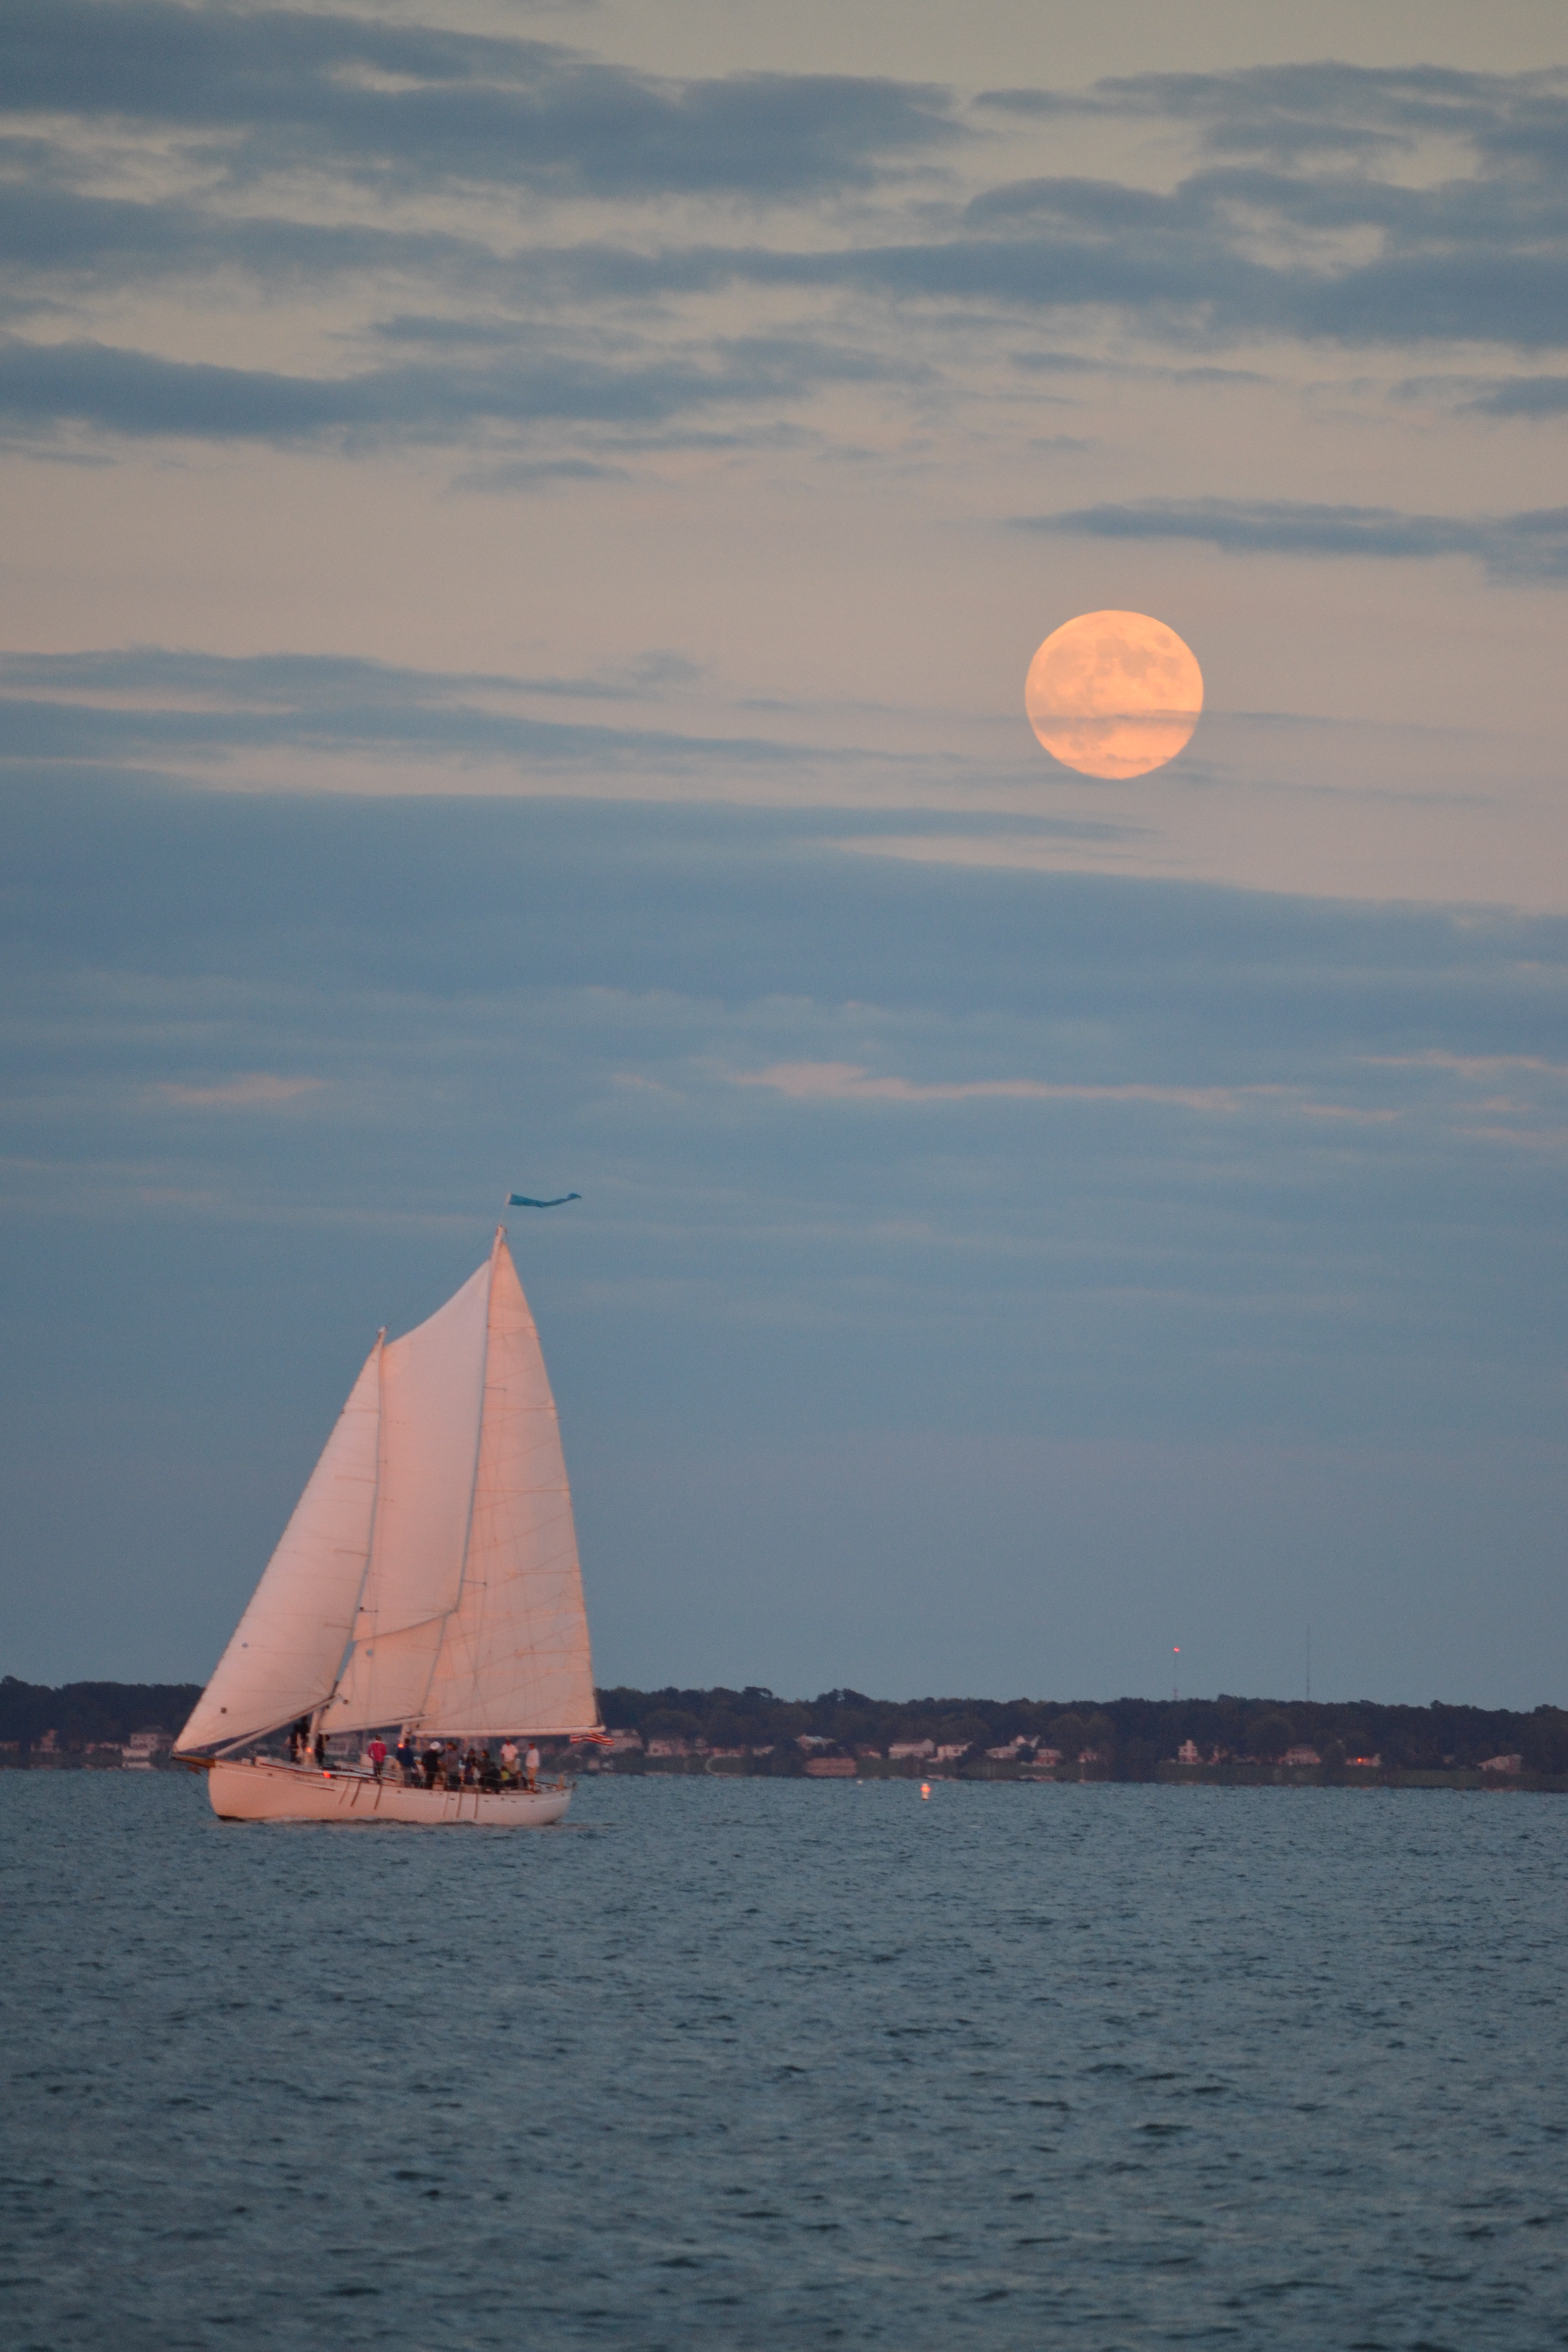 Full Moon rising over the schooner on the Bay